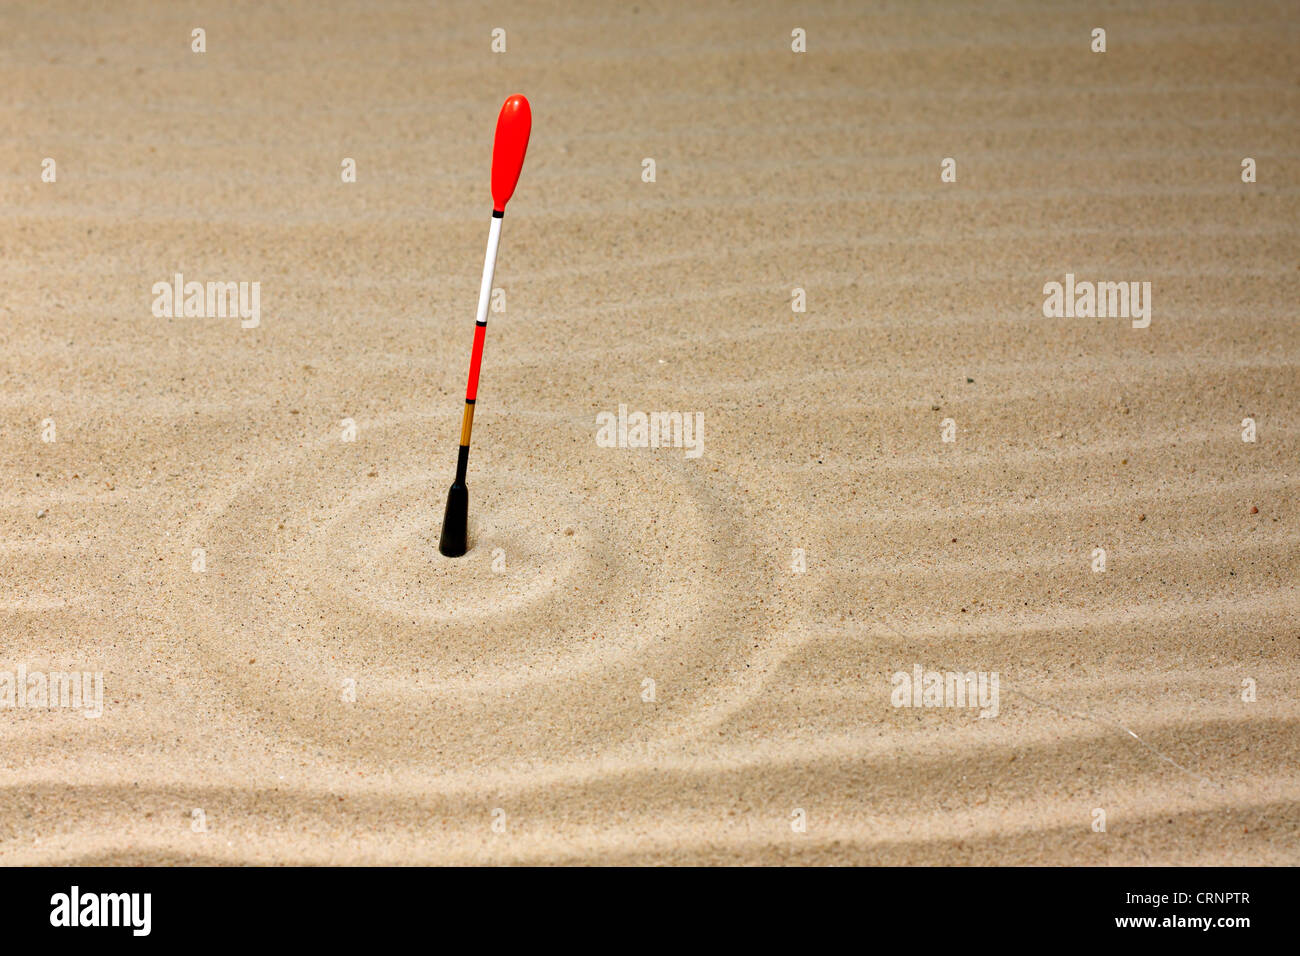 Angeln und Geduld abstrakte unrealistisch einzigartiges Konzept der Schwimmer in der Wüste sand Stockfoto